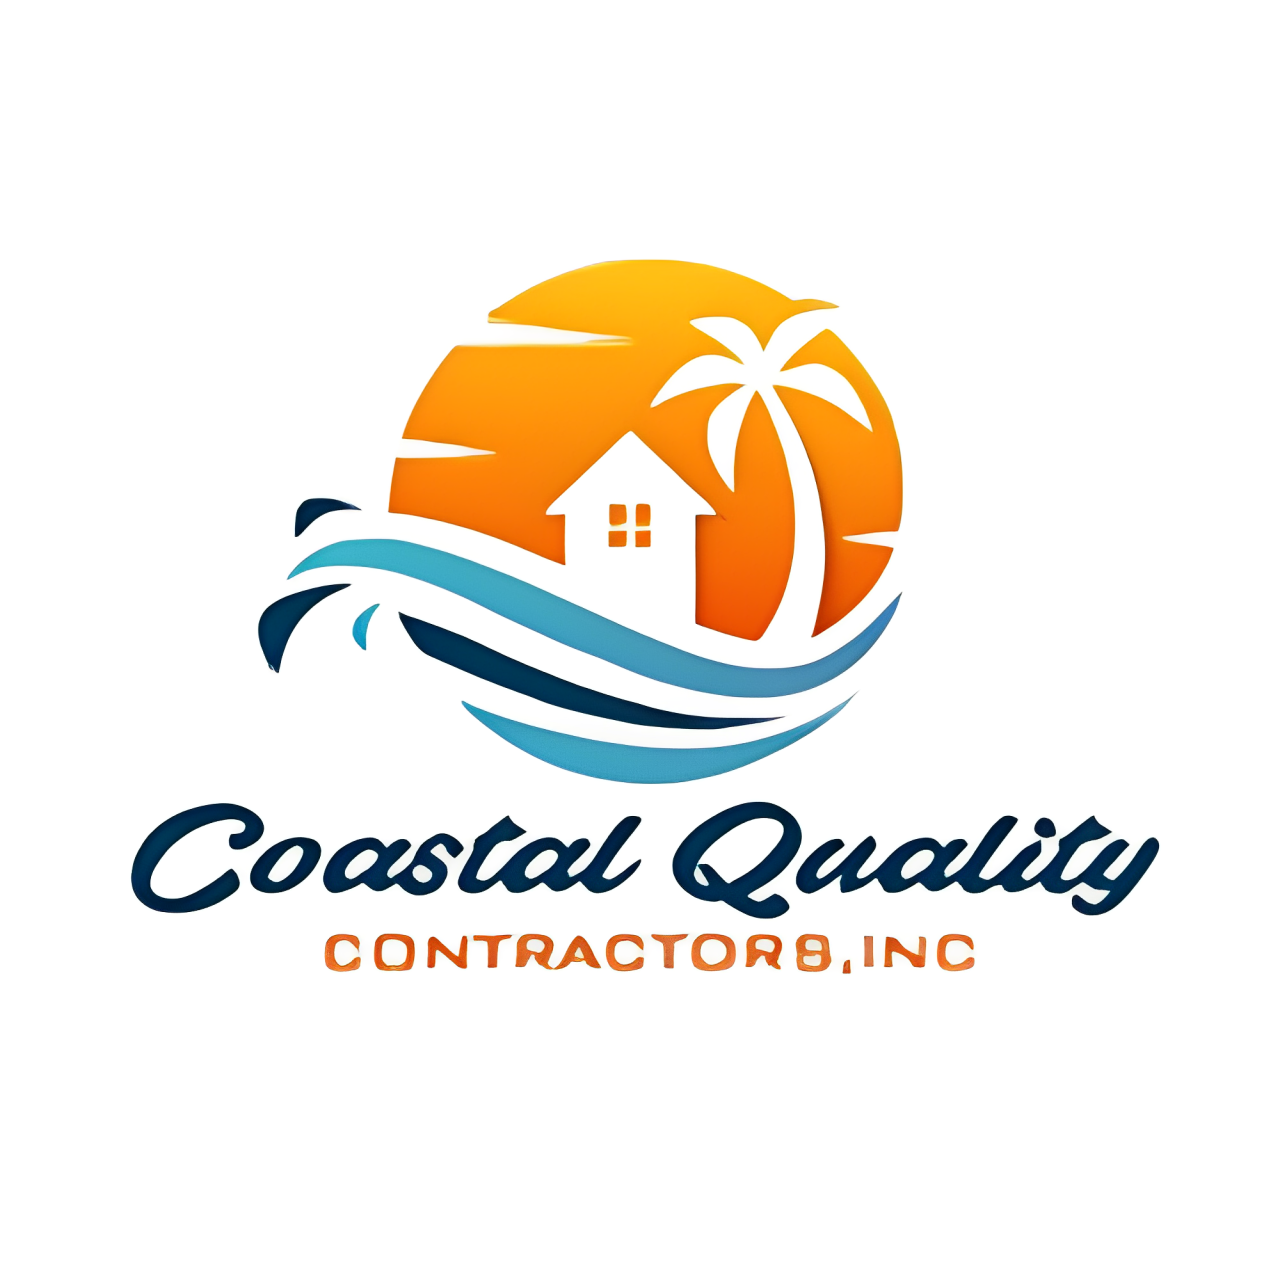 Coastal Quality Contractors, INC.